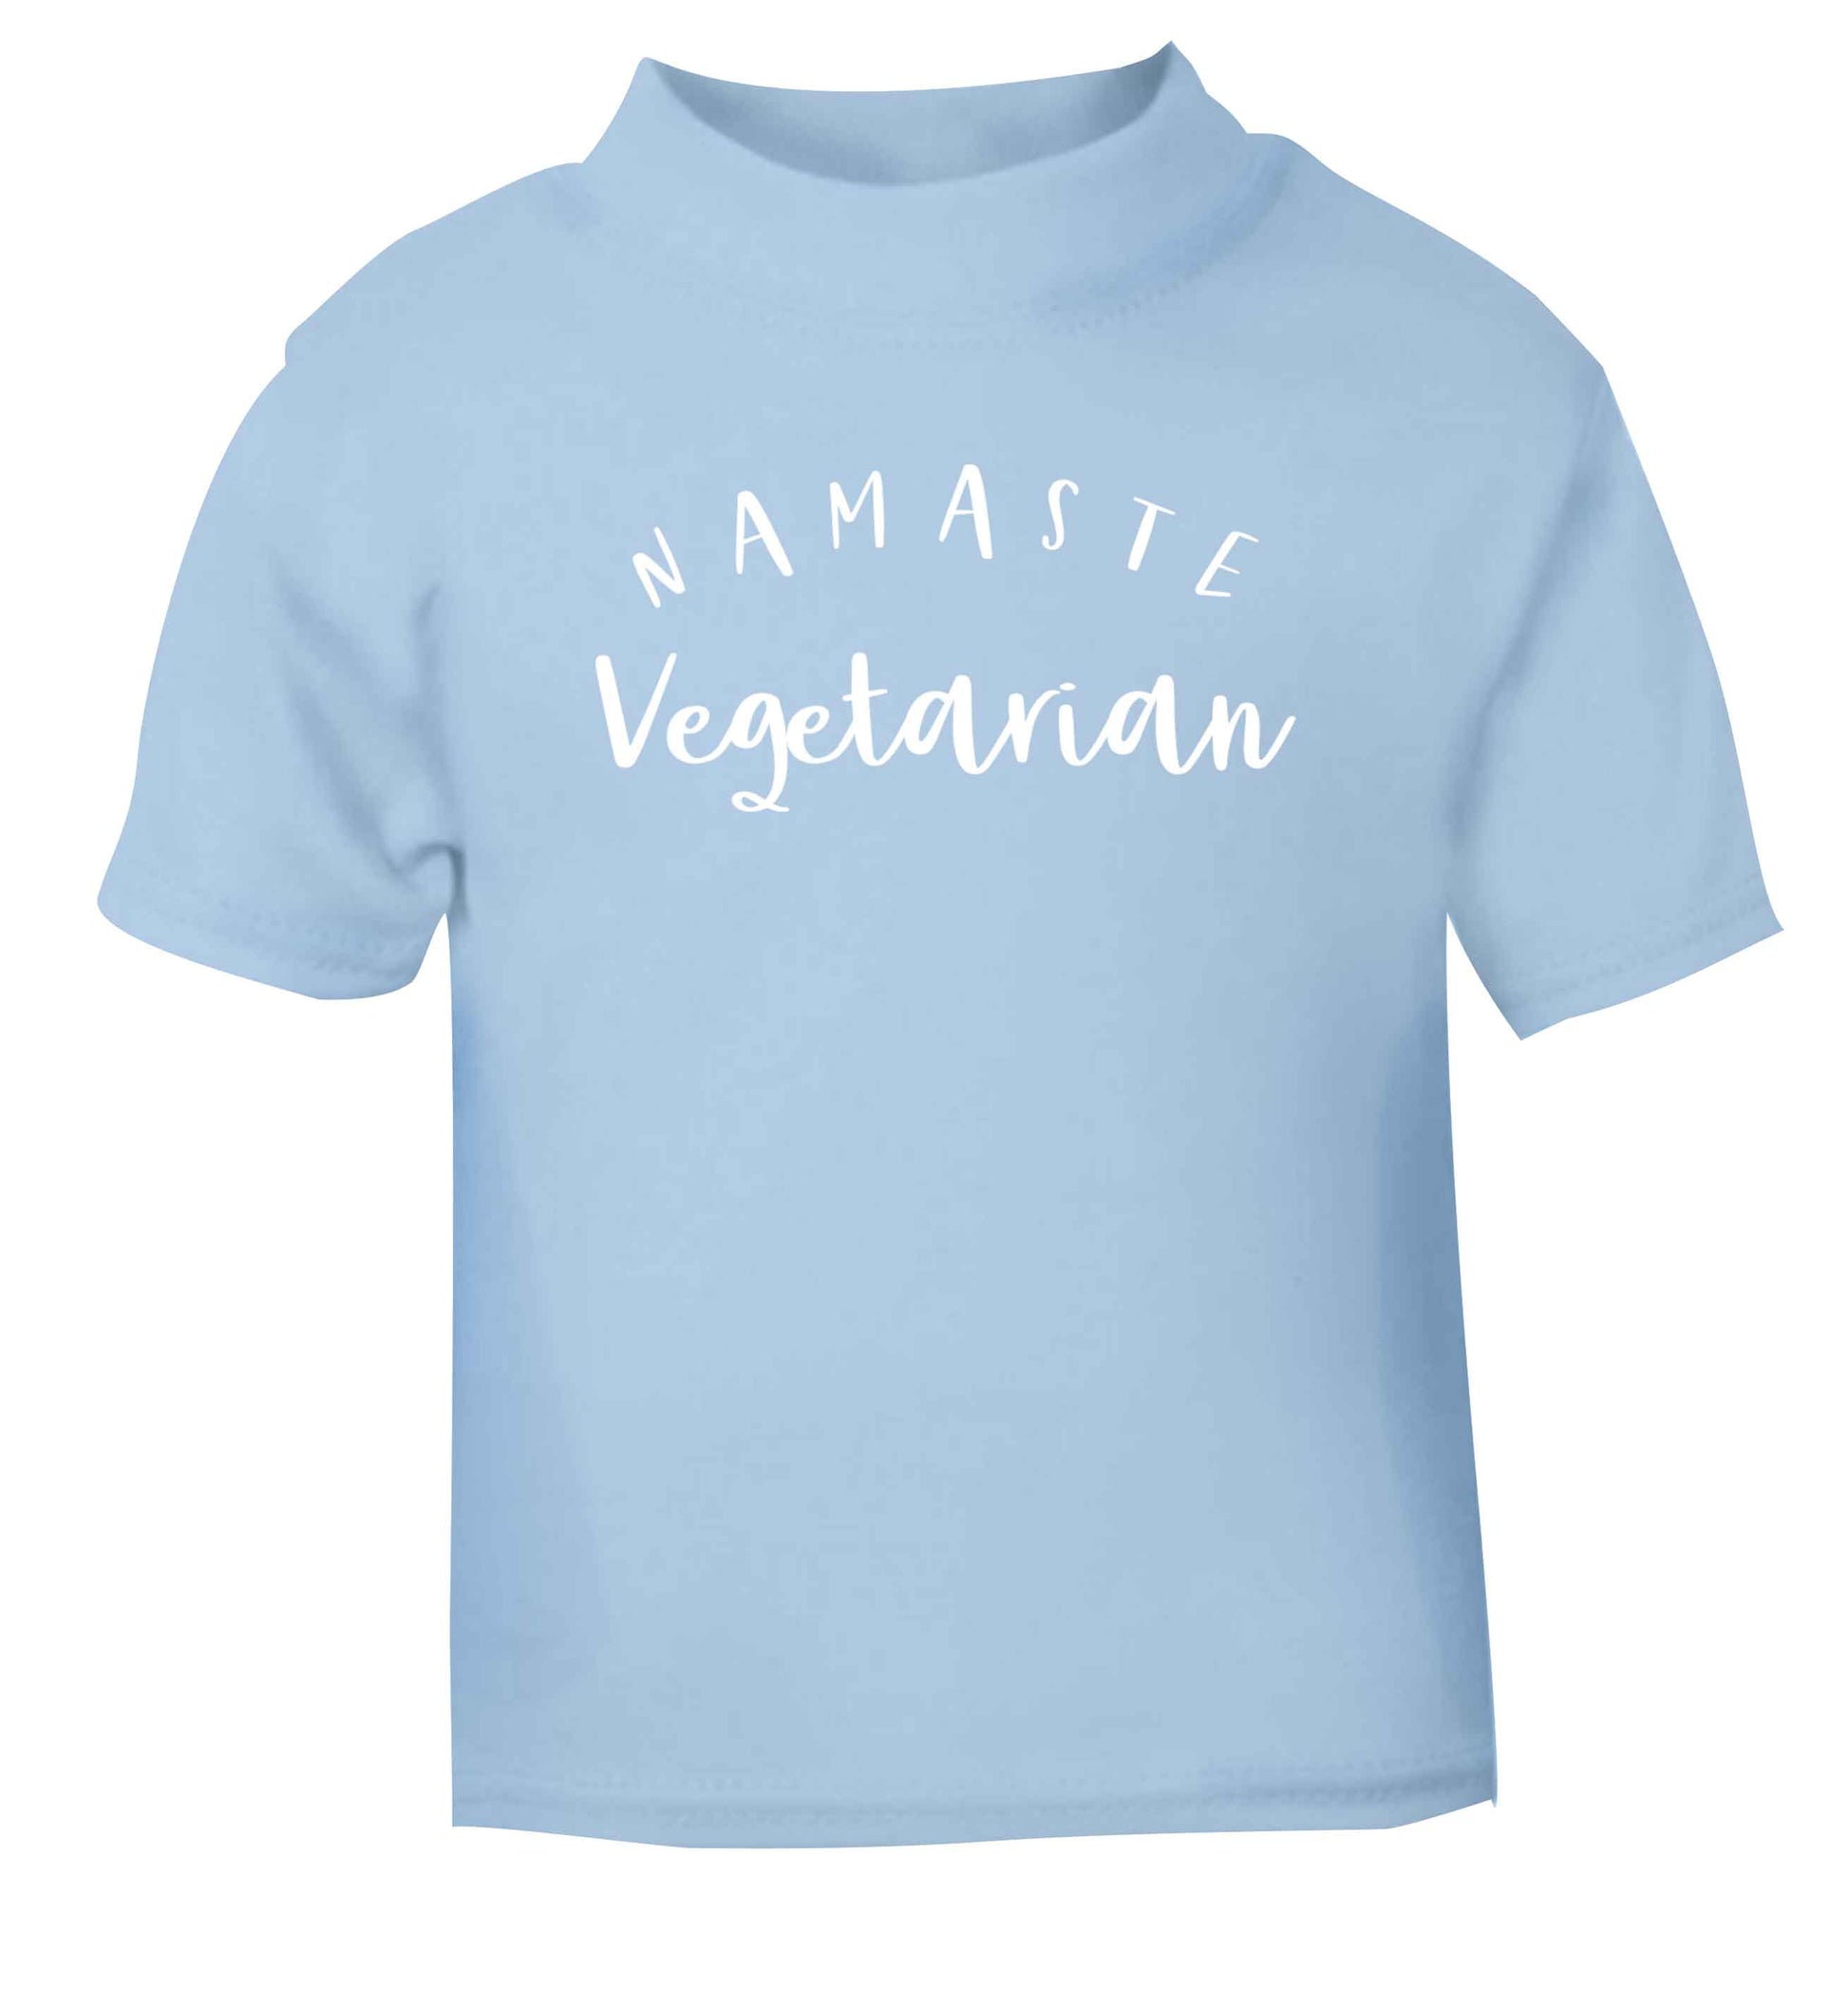 Namaste vegetarian light blue Baby Toddler Tshirt 2 Years